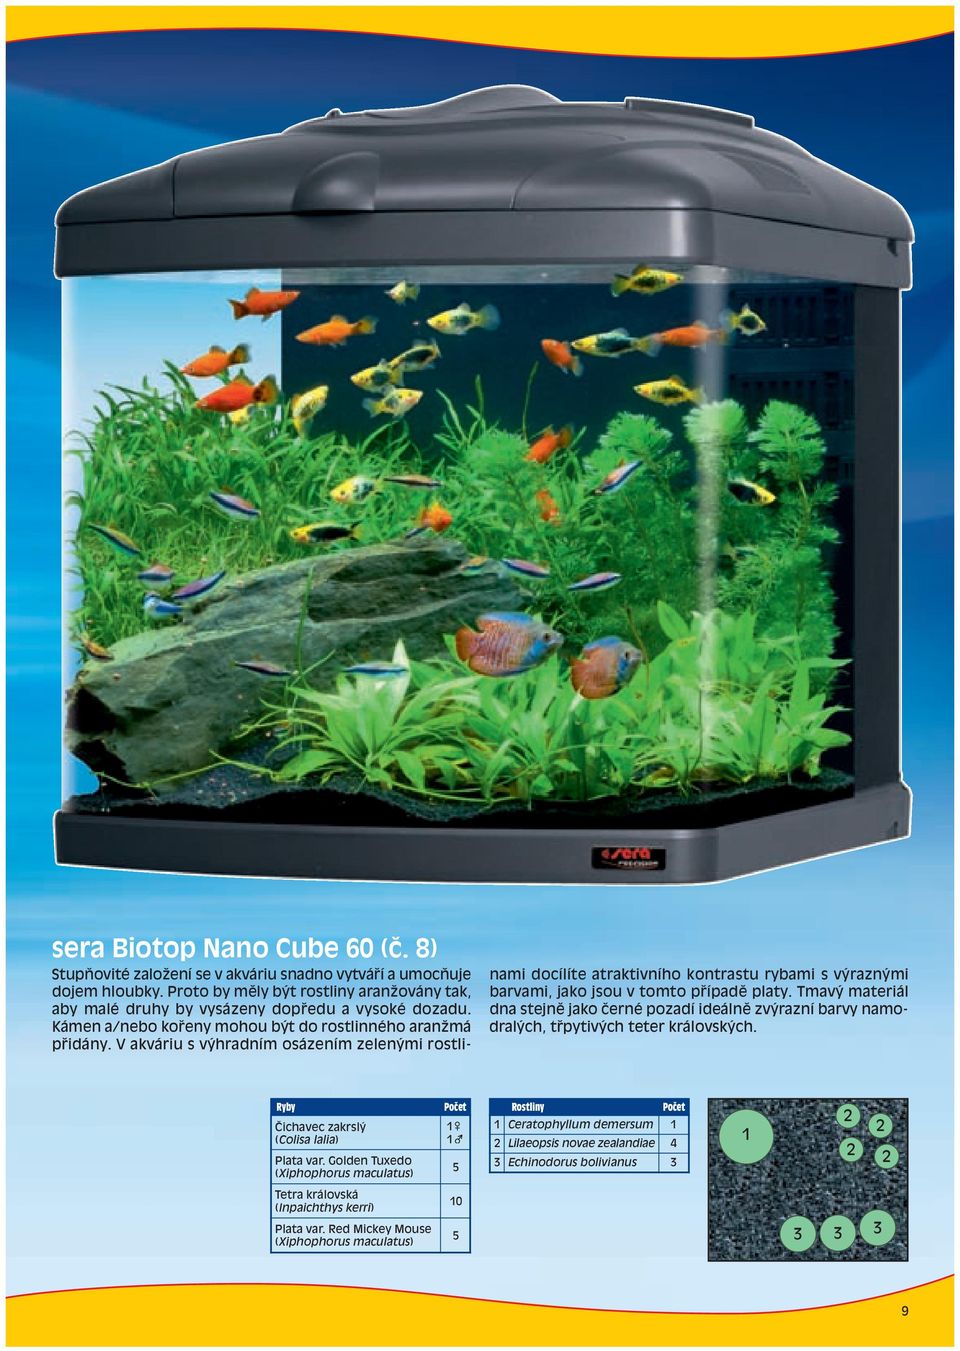 V akváriu s výhradním osázením zelenými rostlinami docílíte atraktivního kontrastu rybami s výraznými barvami, jako jsou v tomto p ípadï platy.